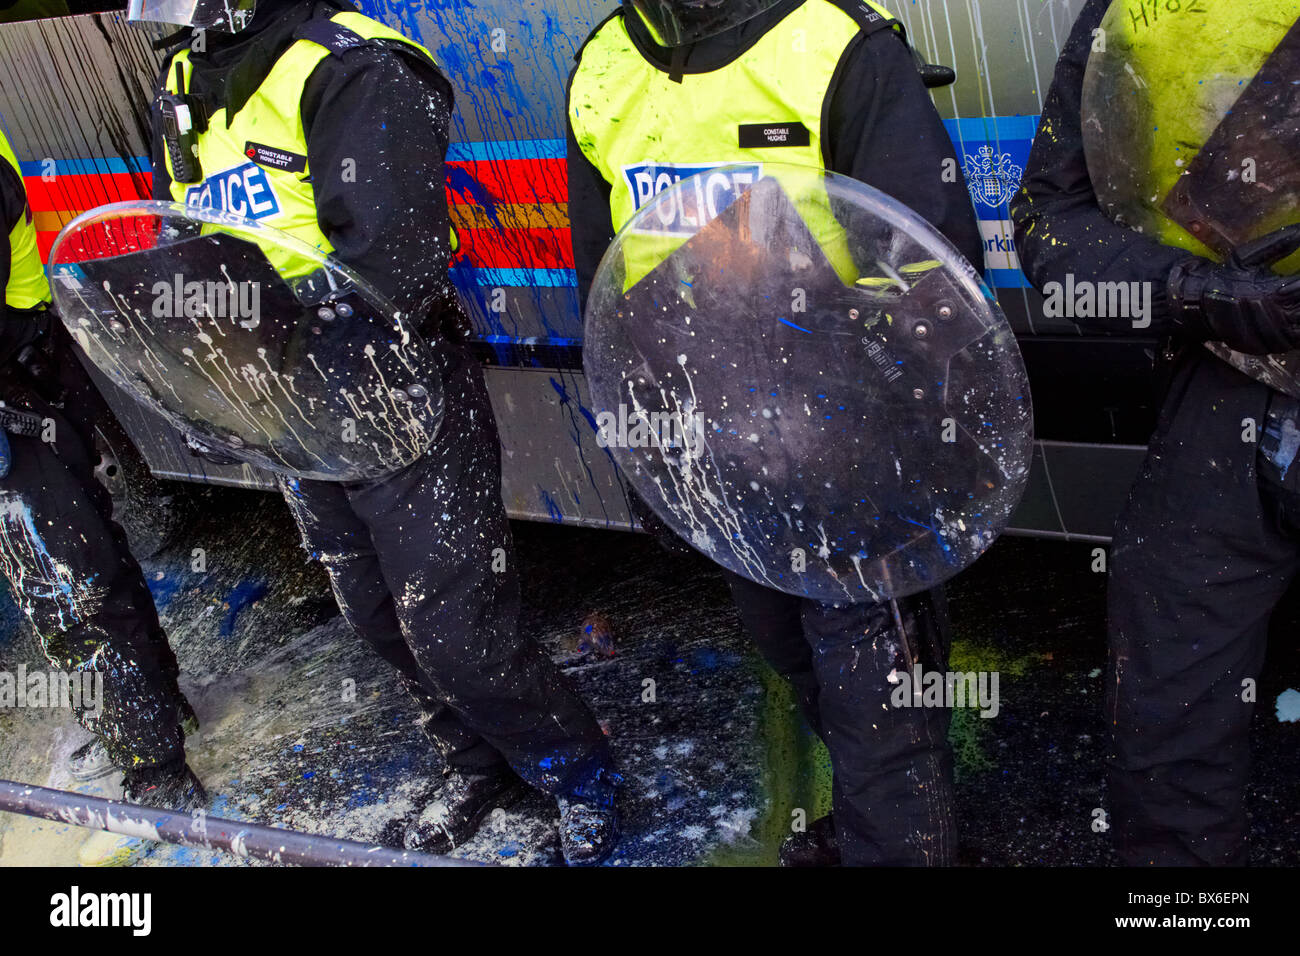 Londra, Regno Unito. Cooperazione di polizia con scudi antisommossa sono opener con bombe di vernice durante il quarto round di proteste degli studenti Foto Stock